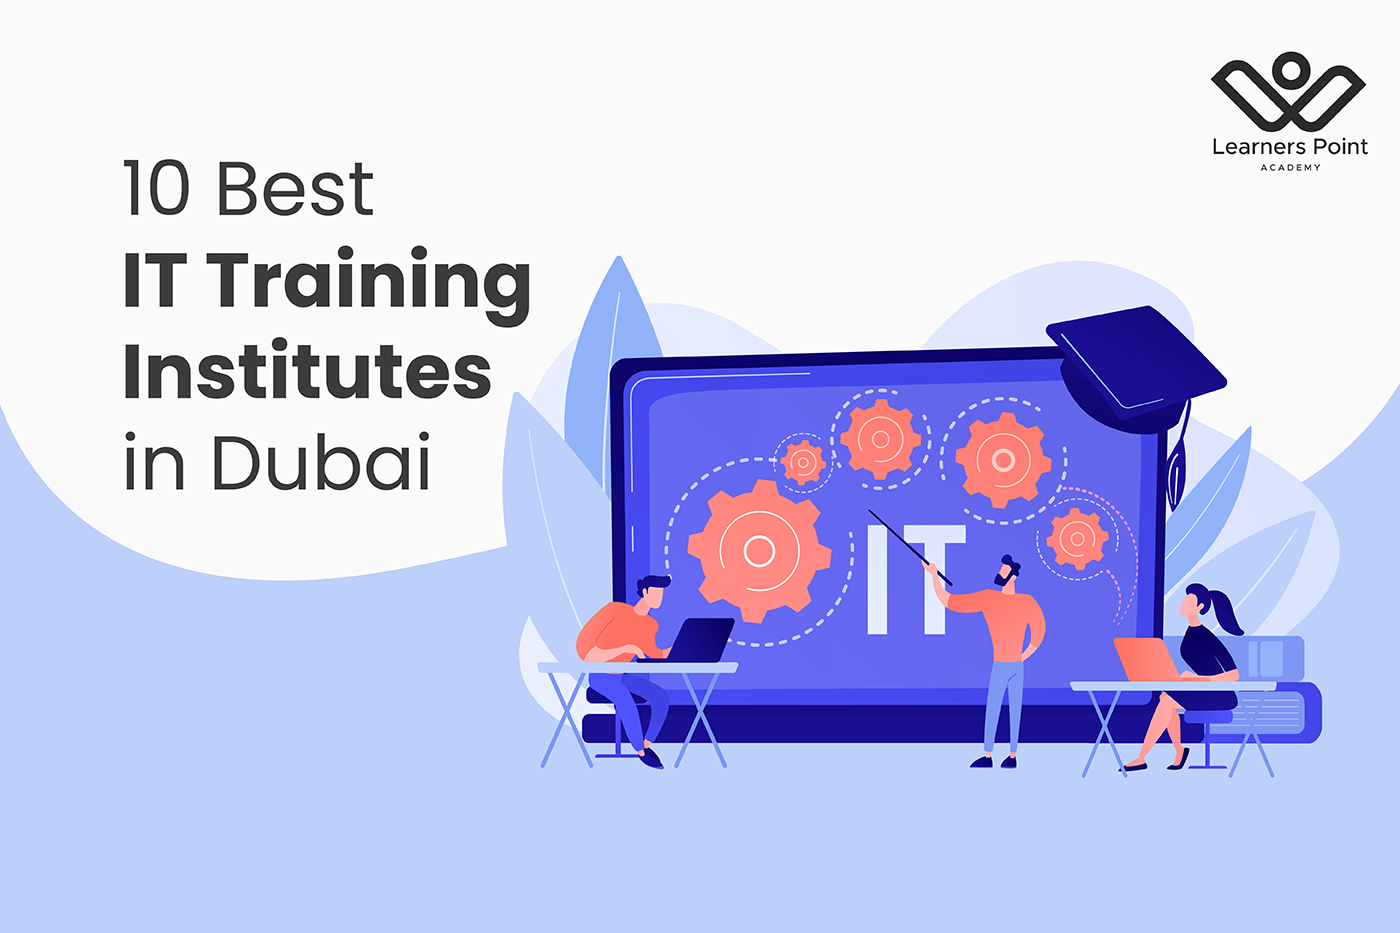 10 Best IT Training Institutes in Dubai